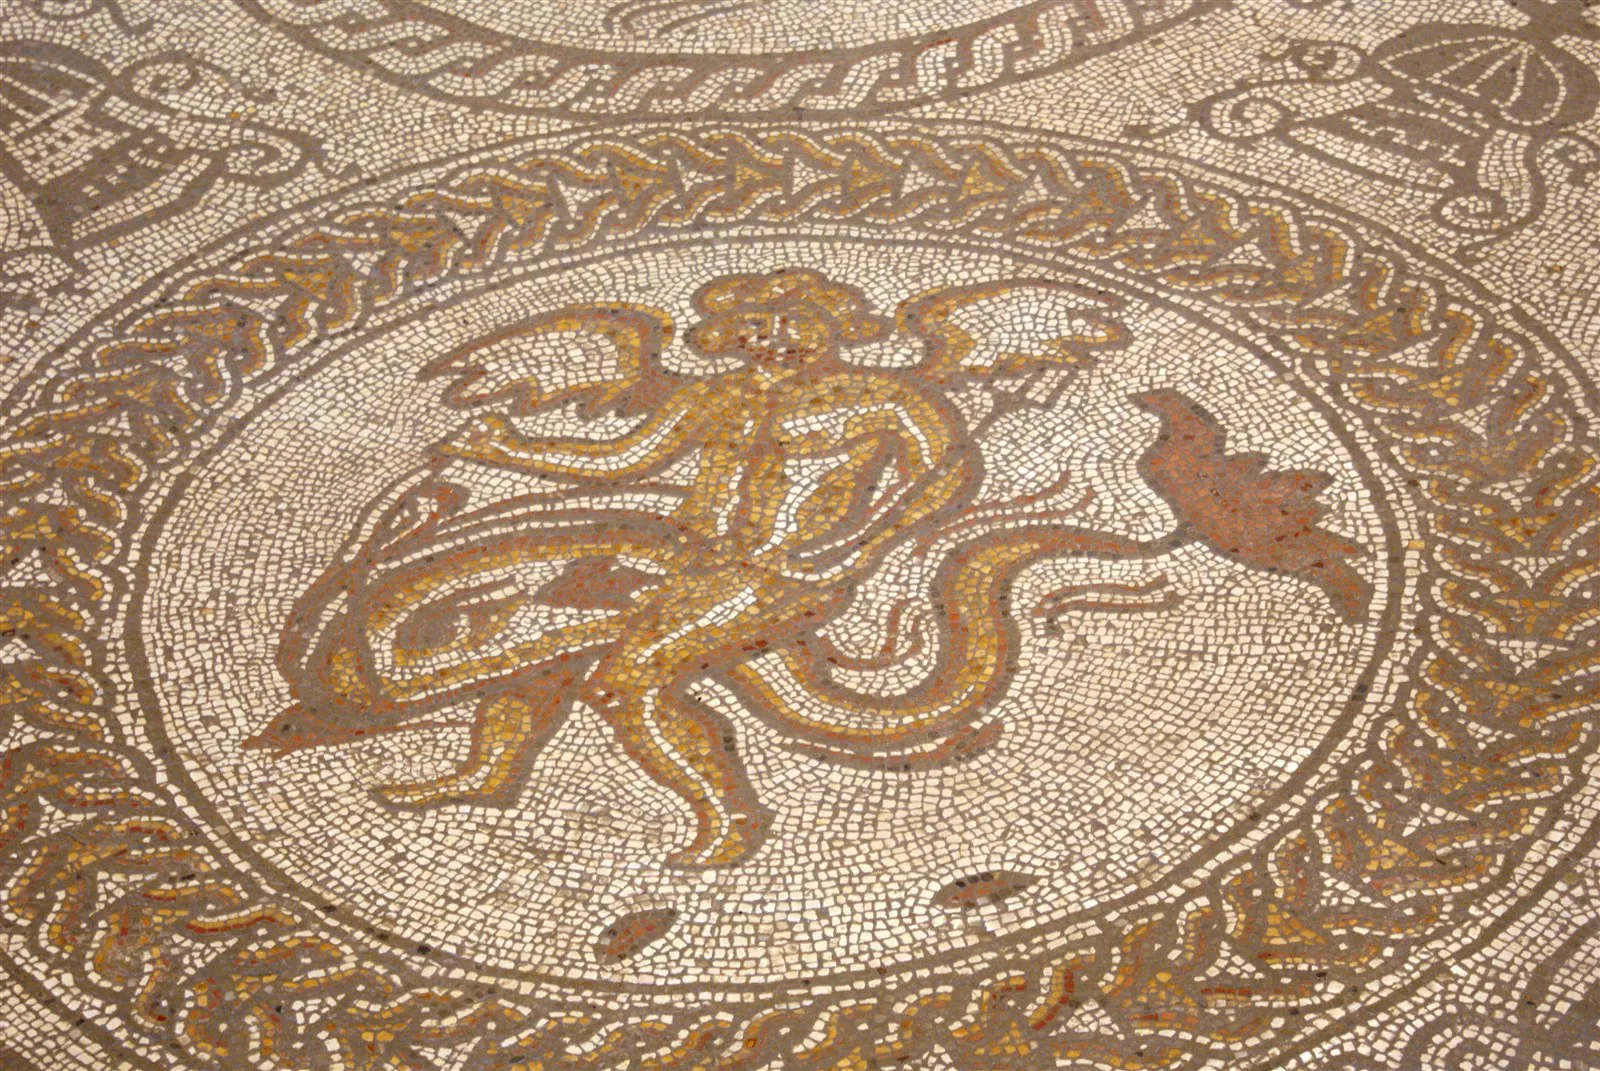 An Amazing mosaic at Fishbourne Roman Palace